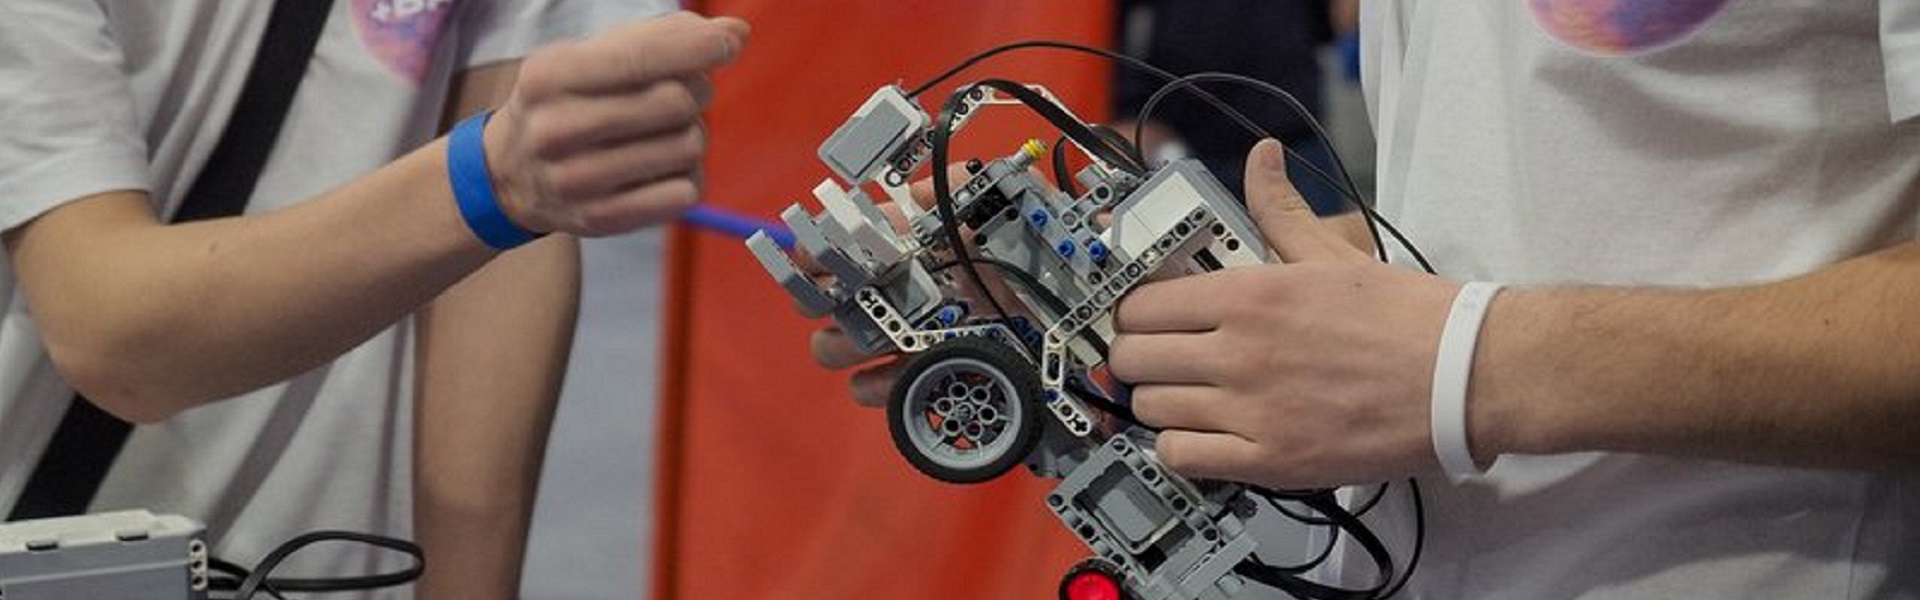 Абсолютные чемпионы: команда из Иркутска победила в национальных соревнованиях по робототехнике